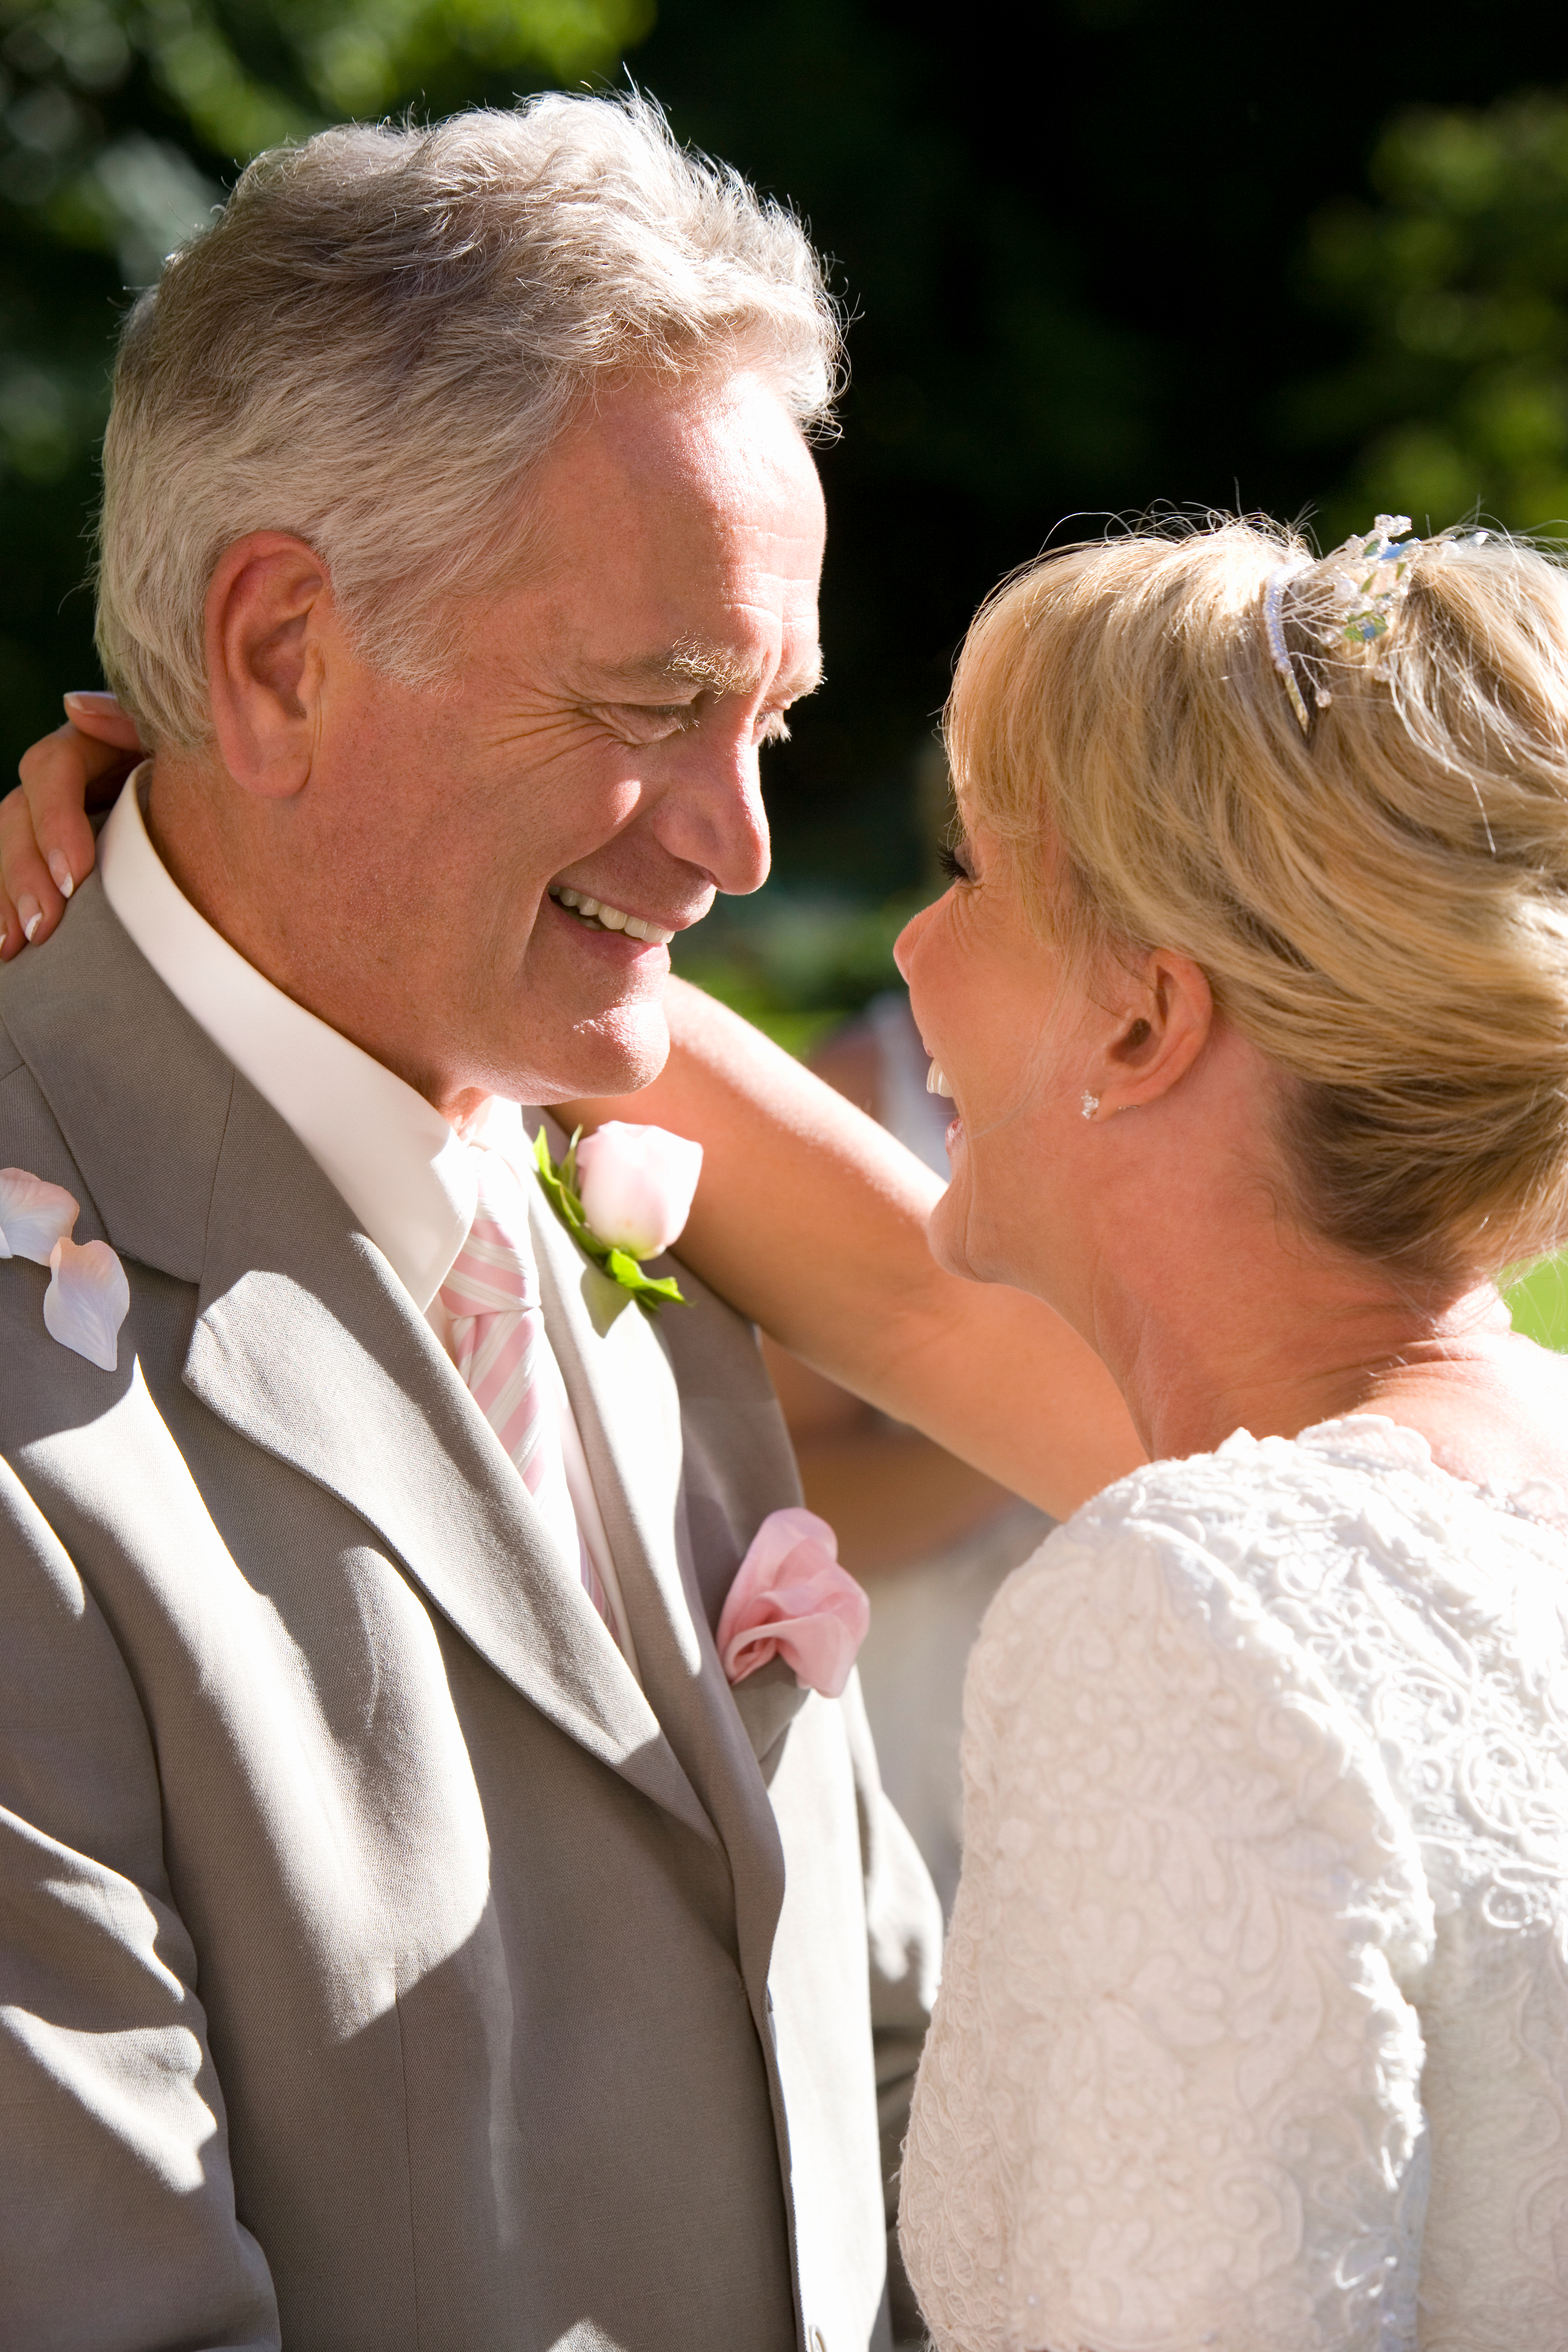 Pareja de ancianos abrazándose durante una boda | Foto: Shutterstock